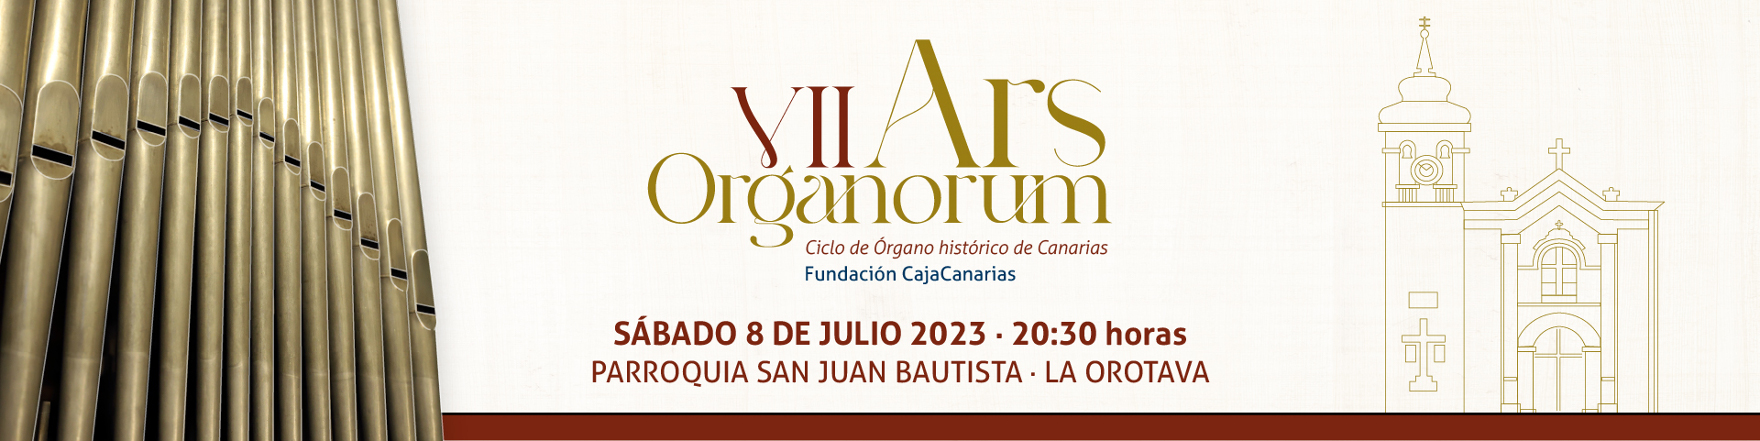 Conciertos - Ars Organorum - La Orotava - 8 de julio